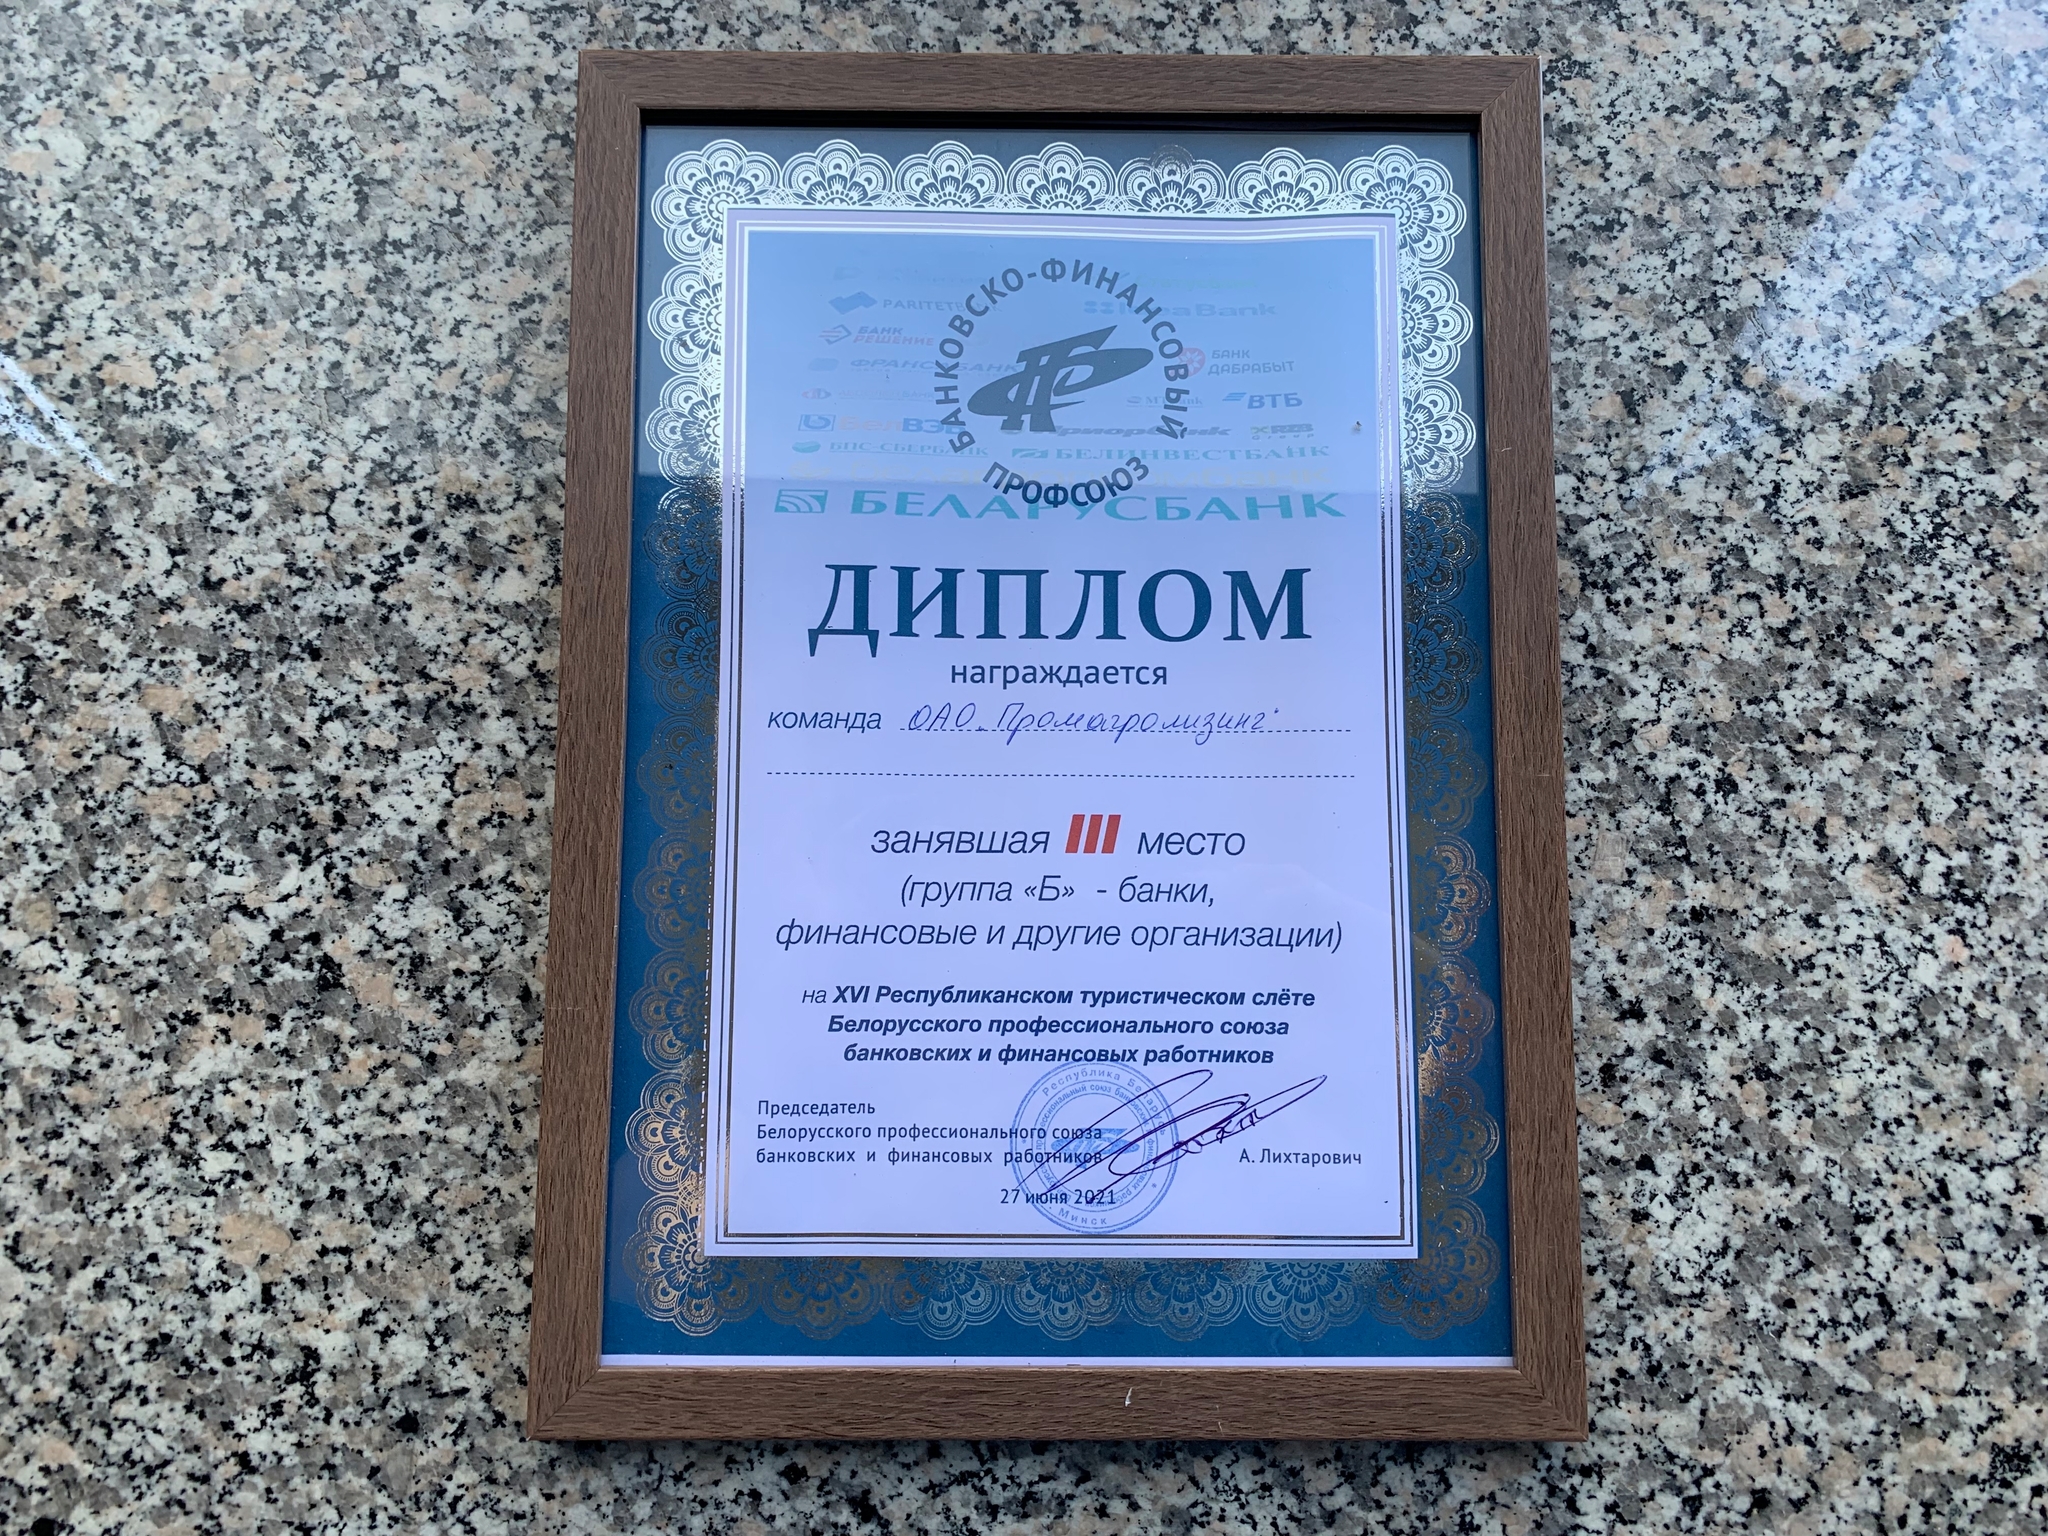 Диплом ОАО "Промагролизинг" за III место среди команд группы «Б» (банки, финансовые и другие организации)